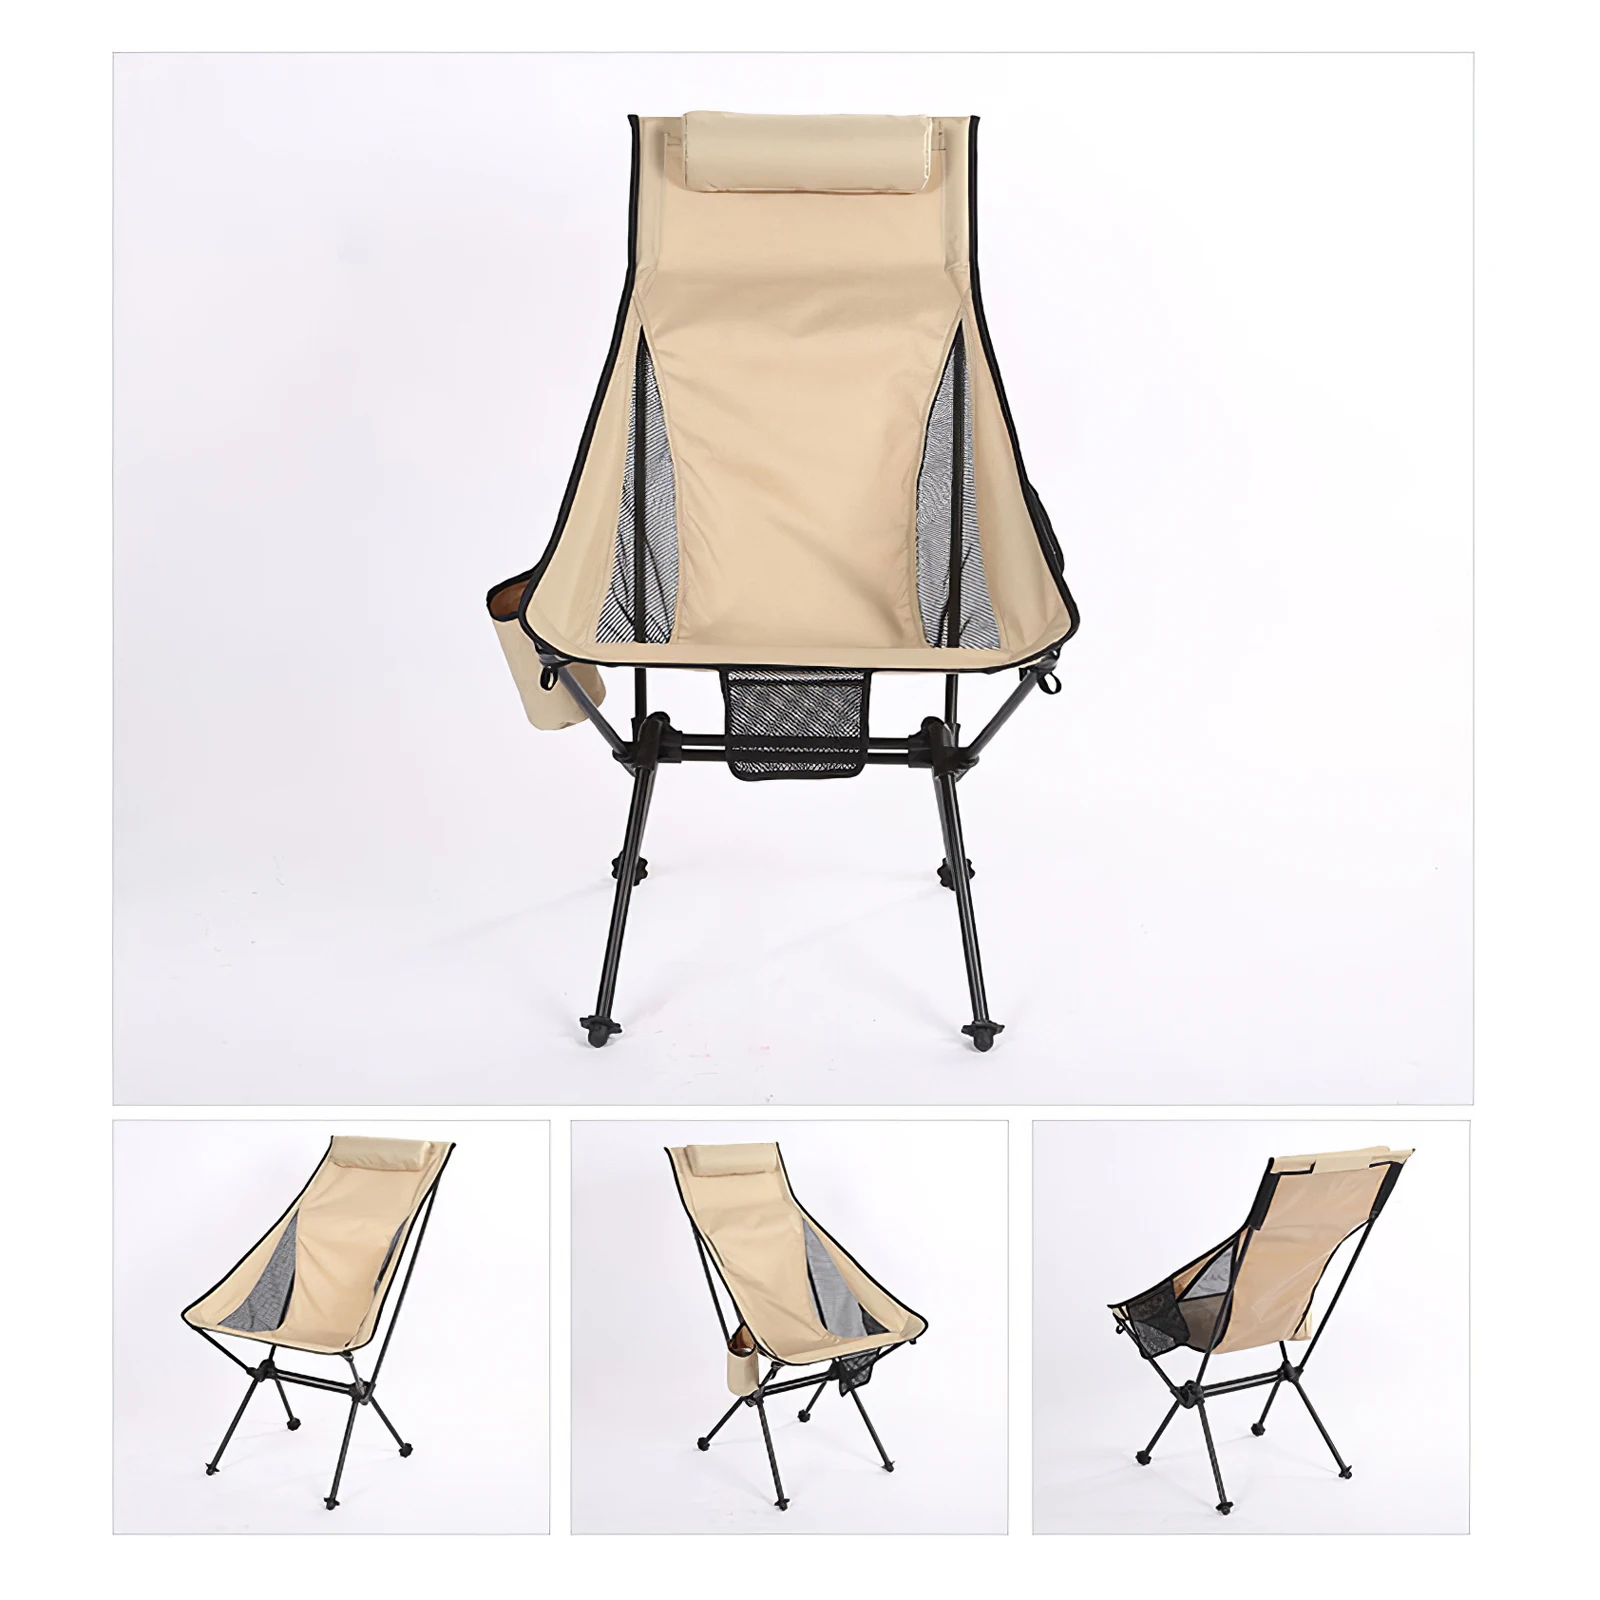 저렴한 휴대용 야외 접이식 캠핑 낚시 의자 알루미늄 합금 정원 달 해변 등받이 의자, 접이식 의자